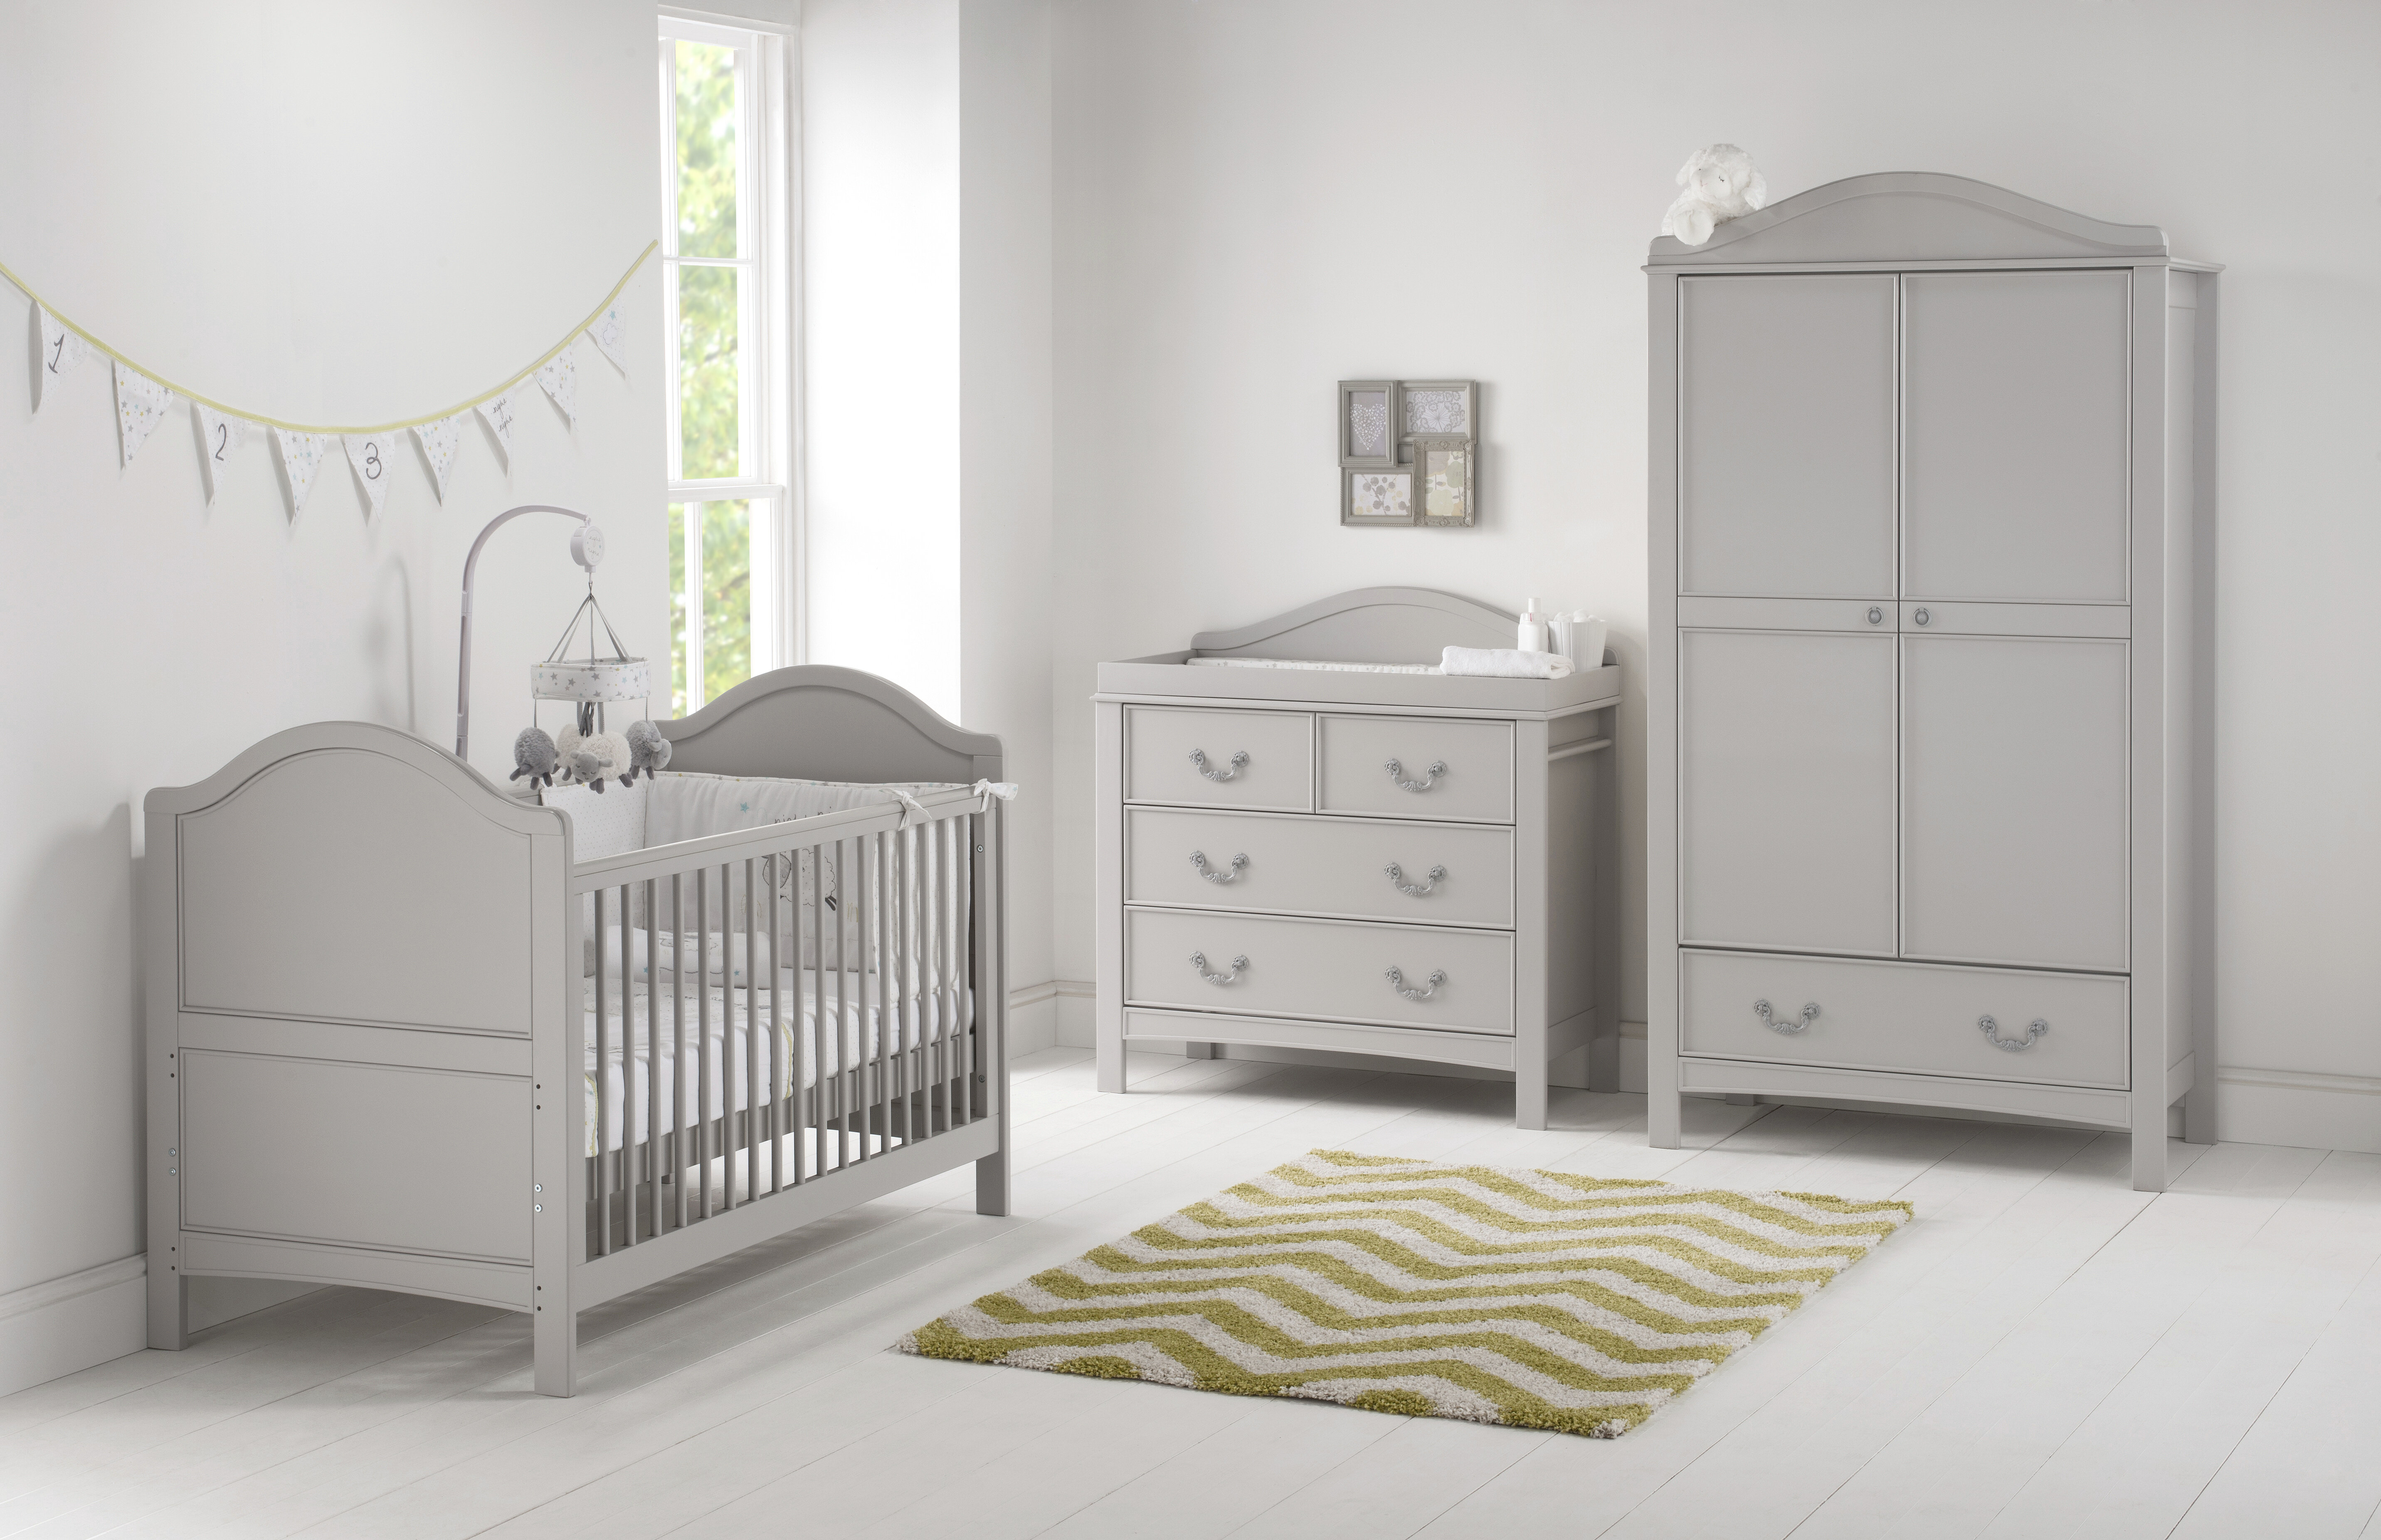 Harriet Bee Leo Cot Bed 3 Piece Nursery Furniture Set Reviews